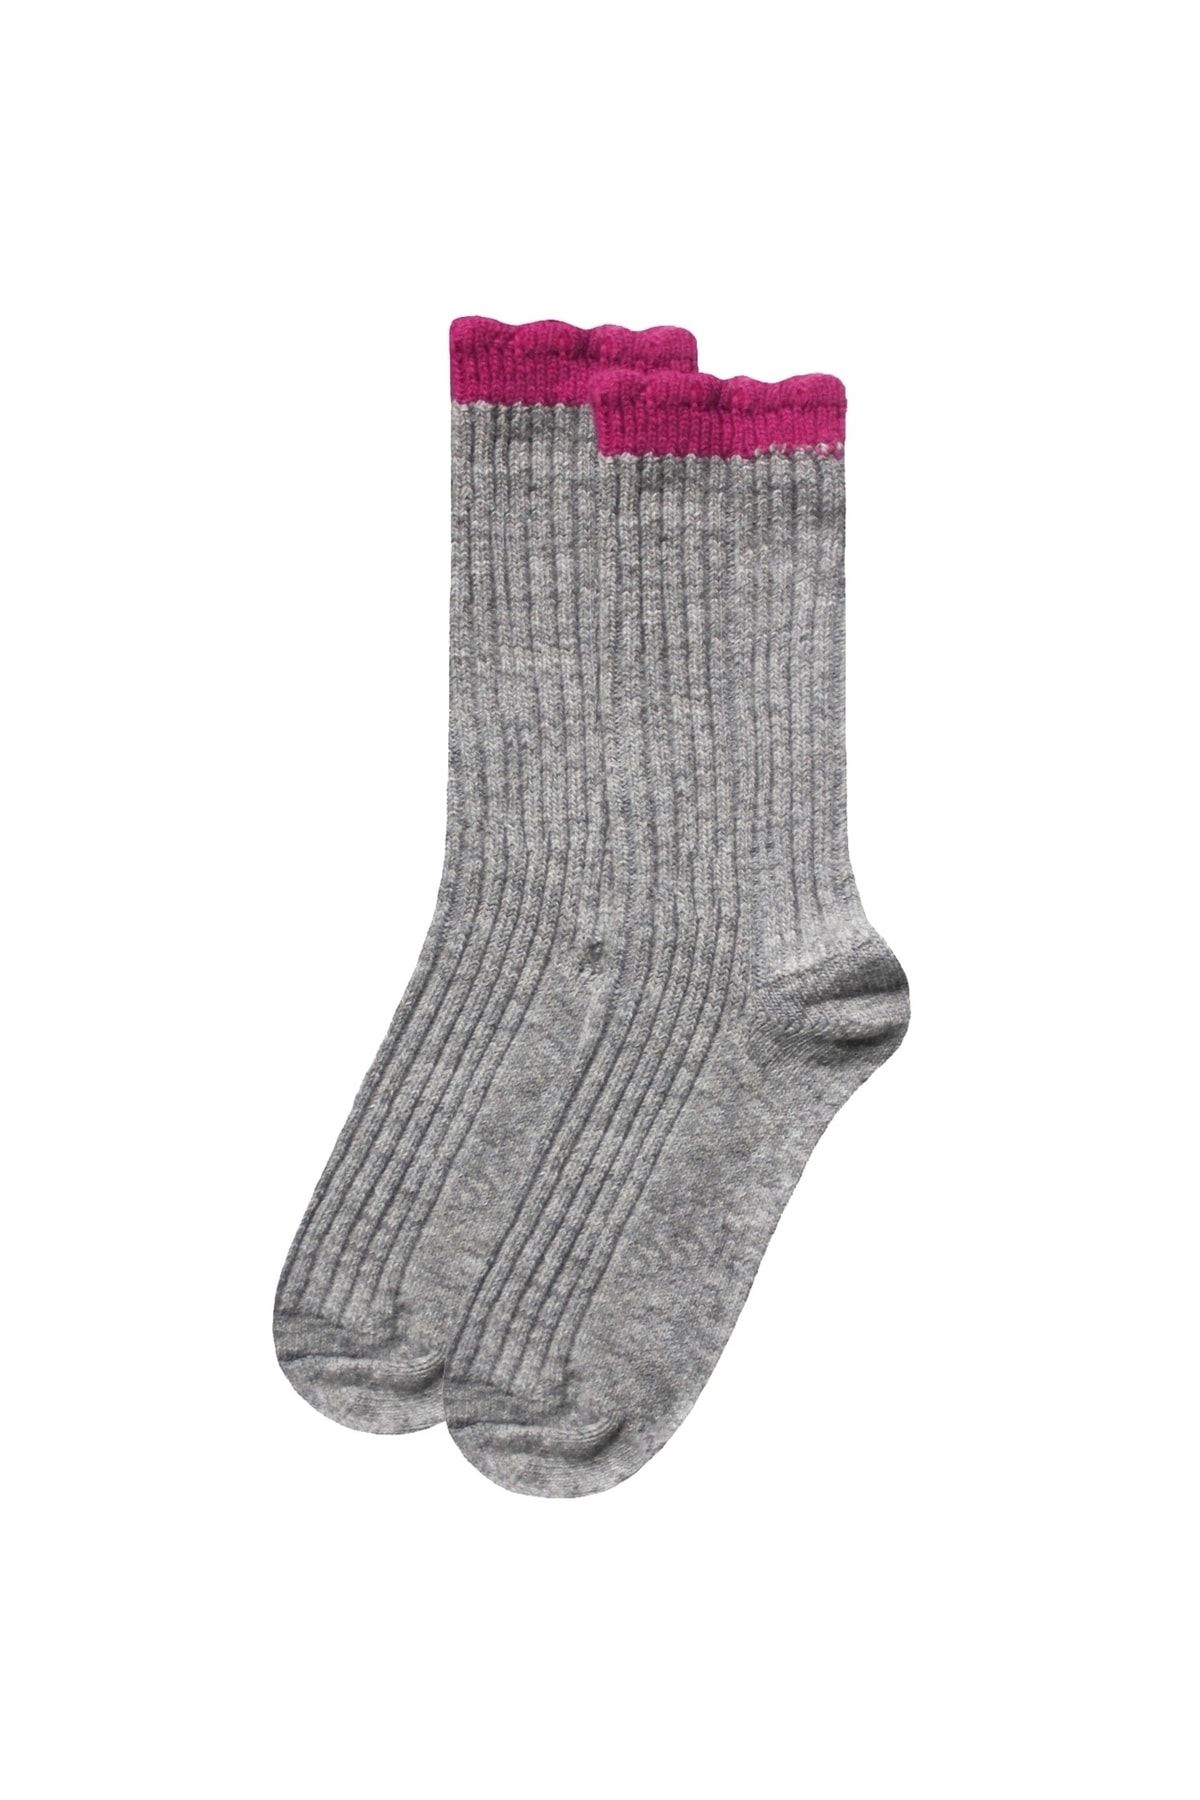 UNLIMITED LEGWEAR Kalın Kışlık Yün Ve Kaşmir Karışımlı Fuşya/gri Bileği Dilimli Kadın Çorap